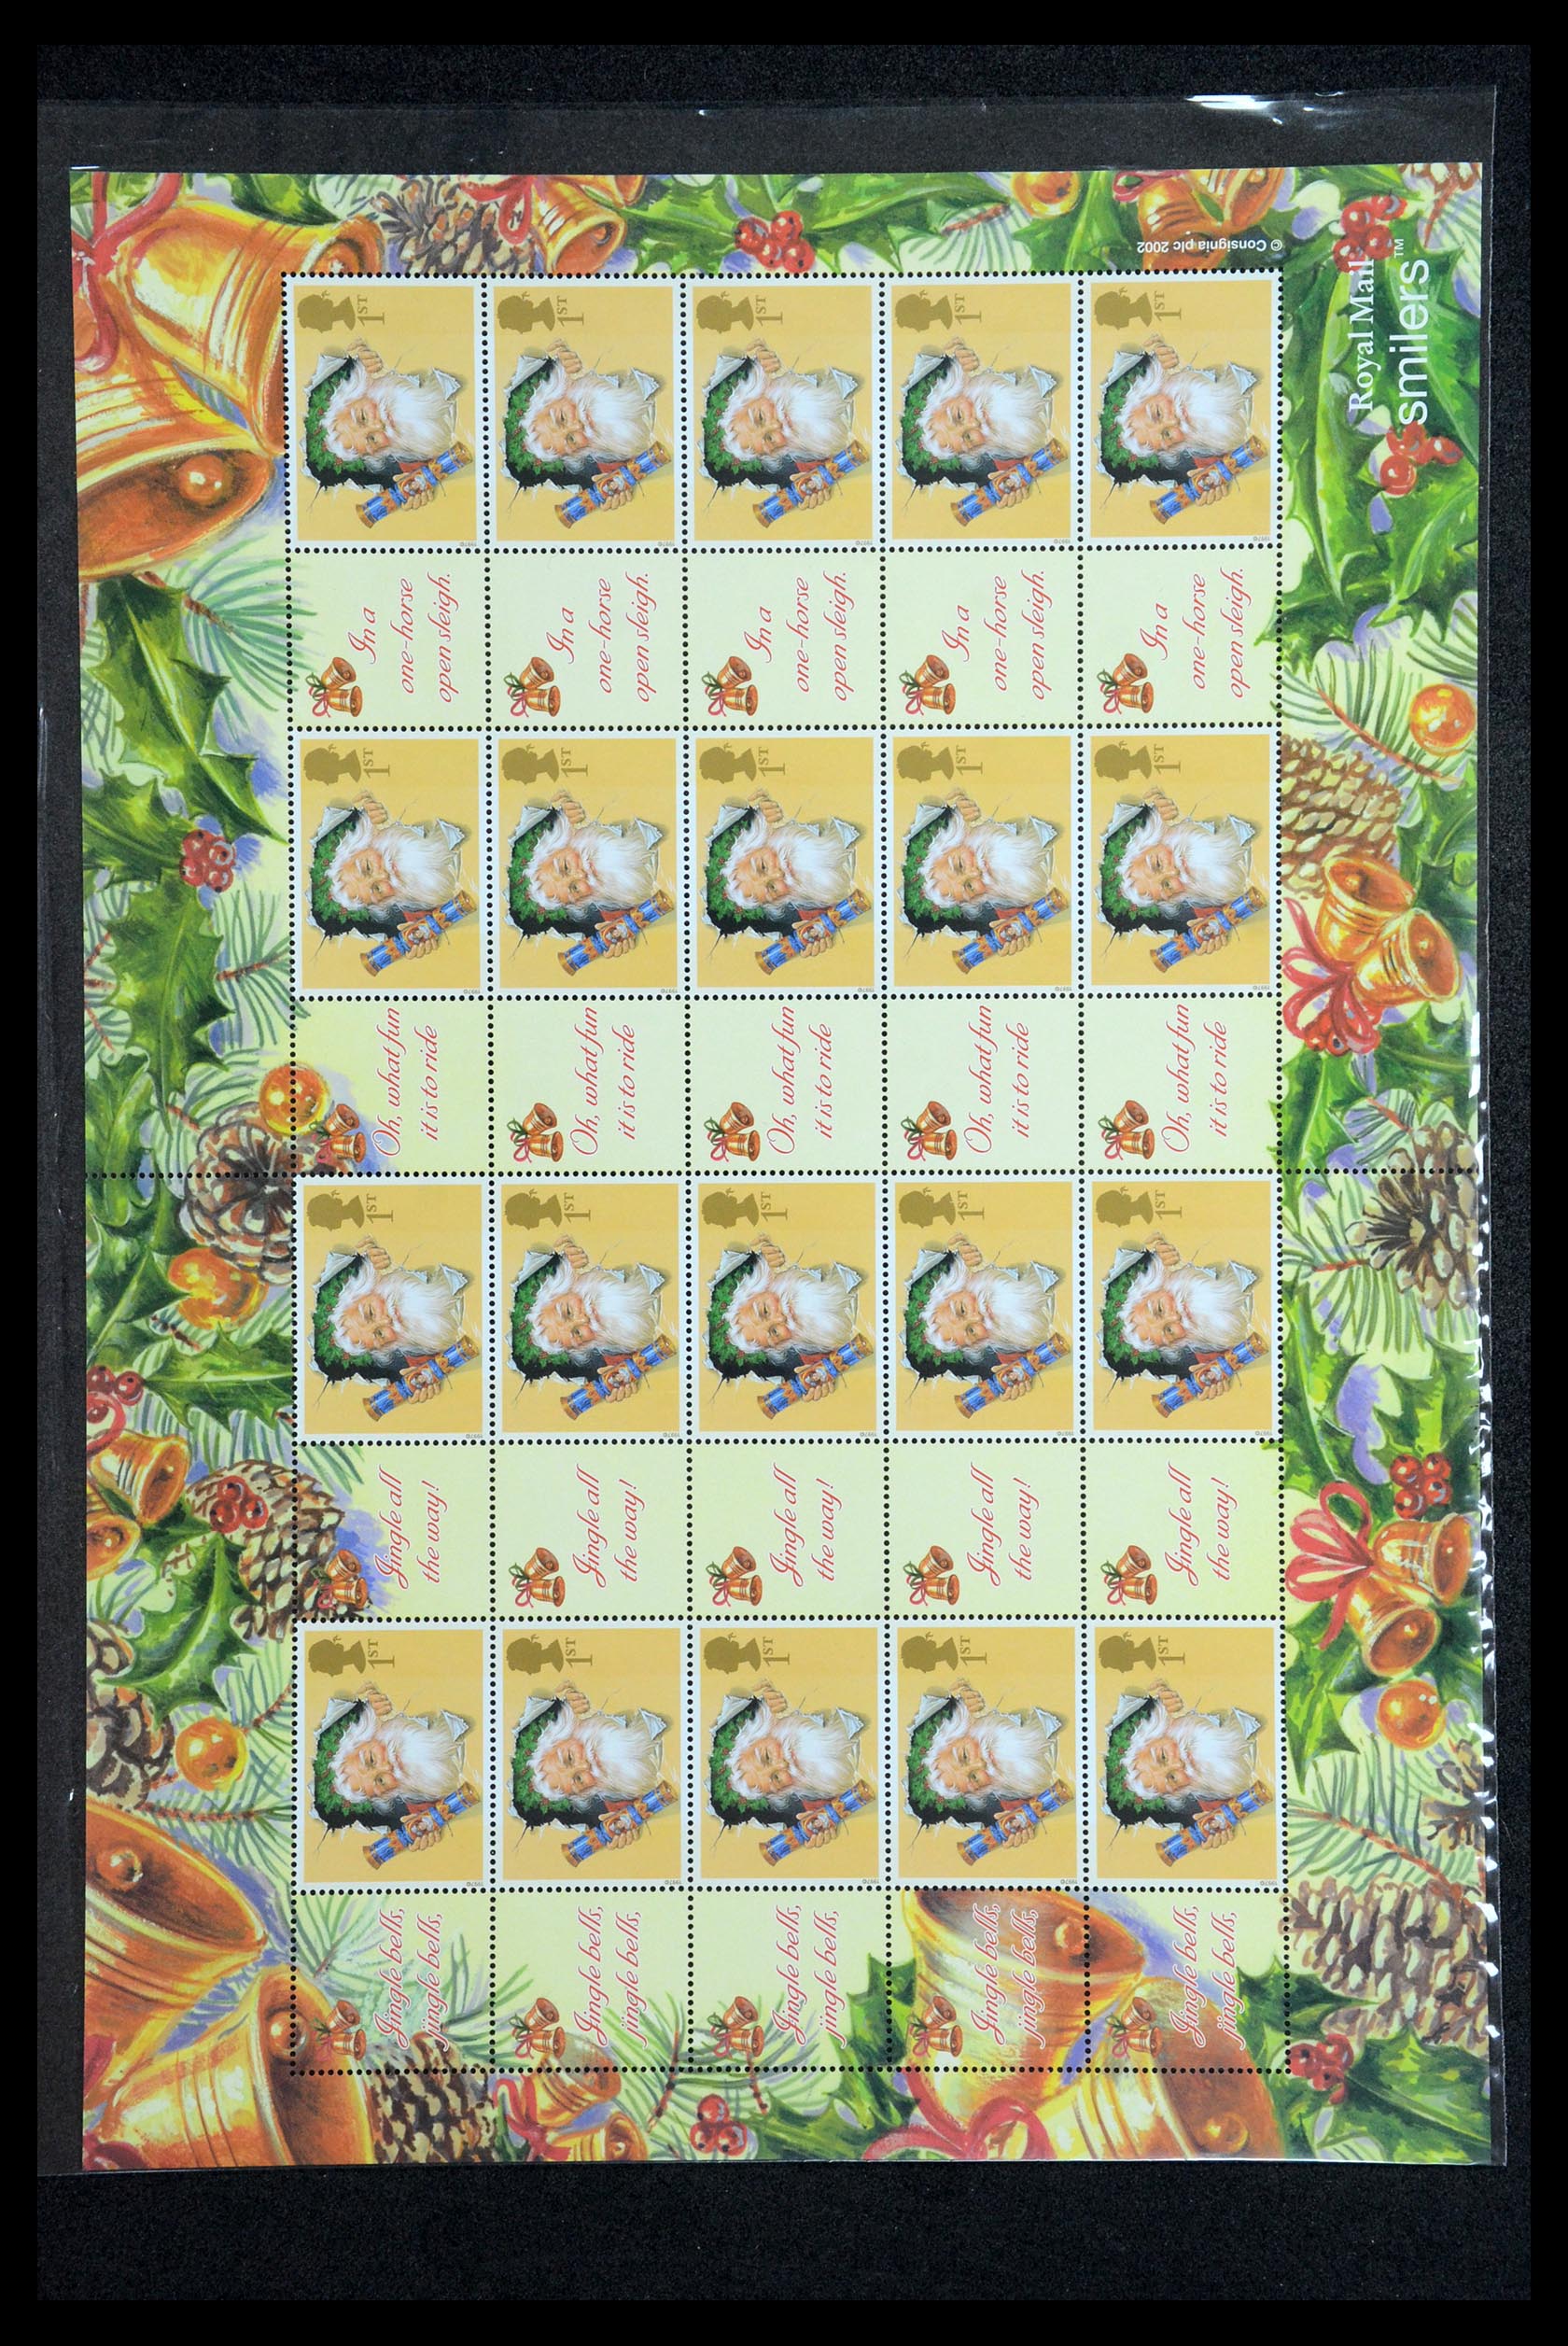 36357 002 - Postzegelverzameling 36357 Engeland Post Office label (smiler) sheets